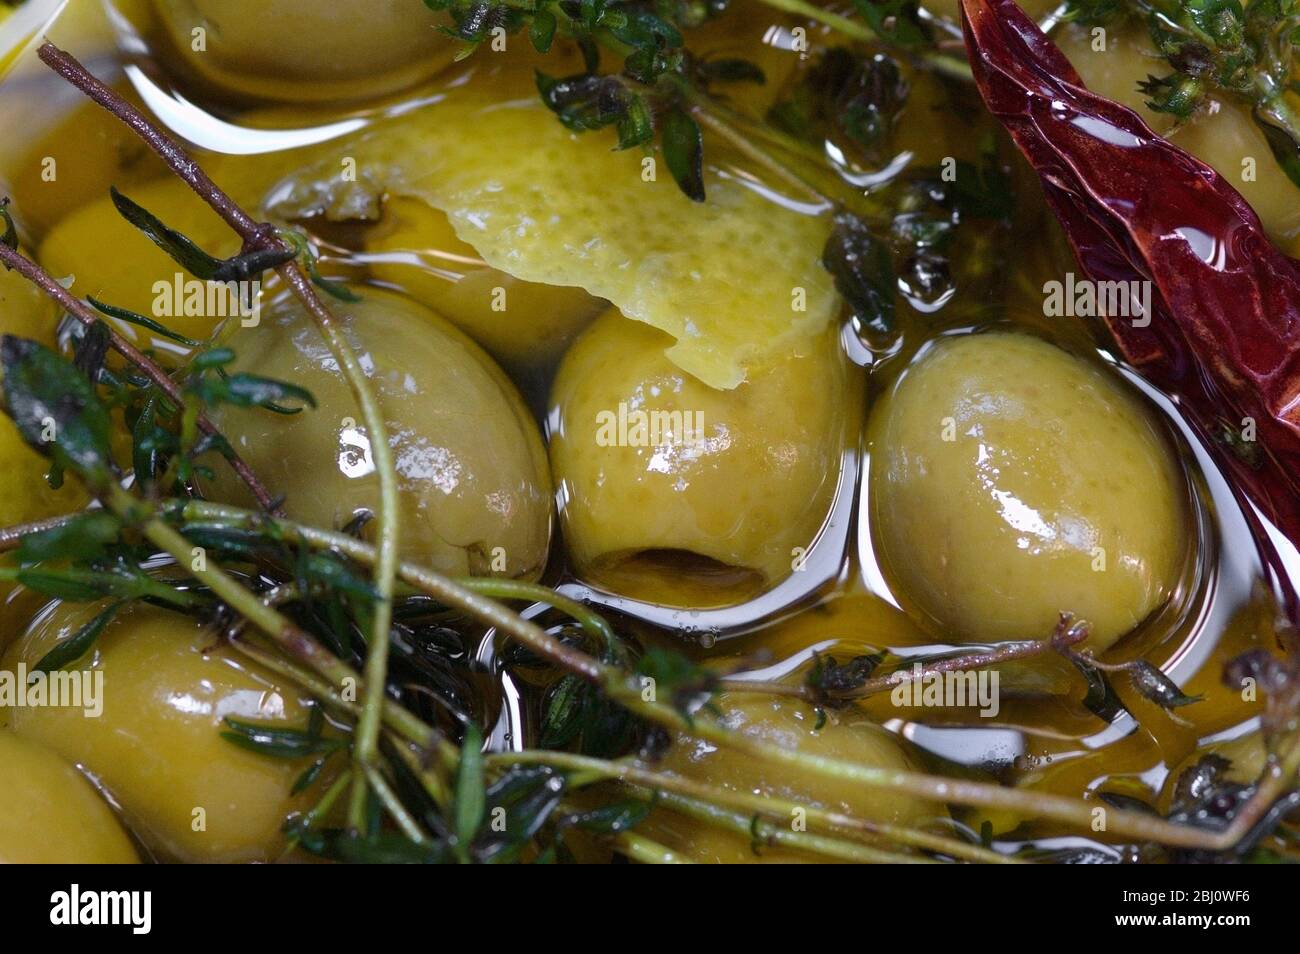 Olives vertes dénoyées dans de l'huile d'olive vierge aromatisées aux branches de thym, de zeste de citron et de piment - Banque D'Images